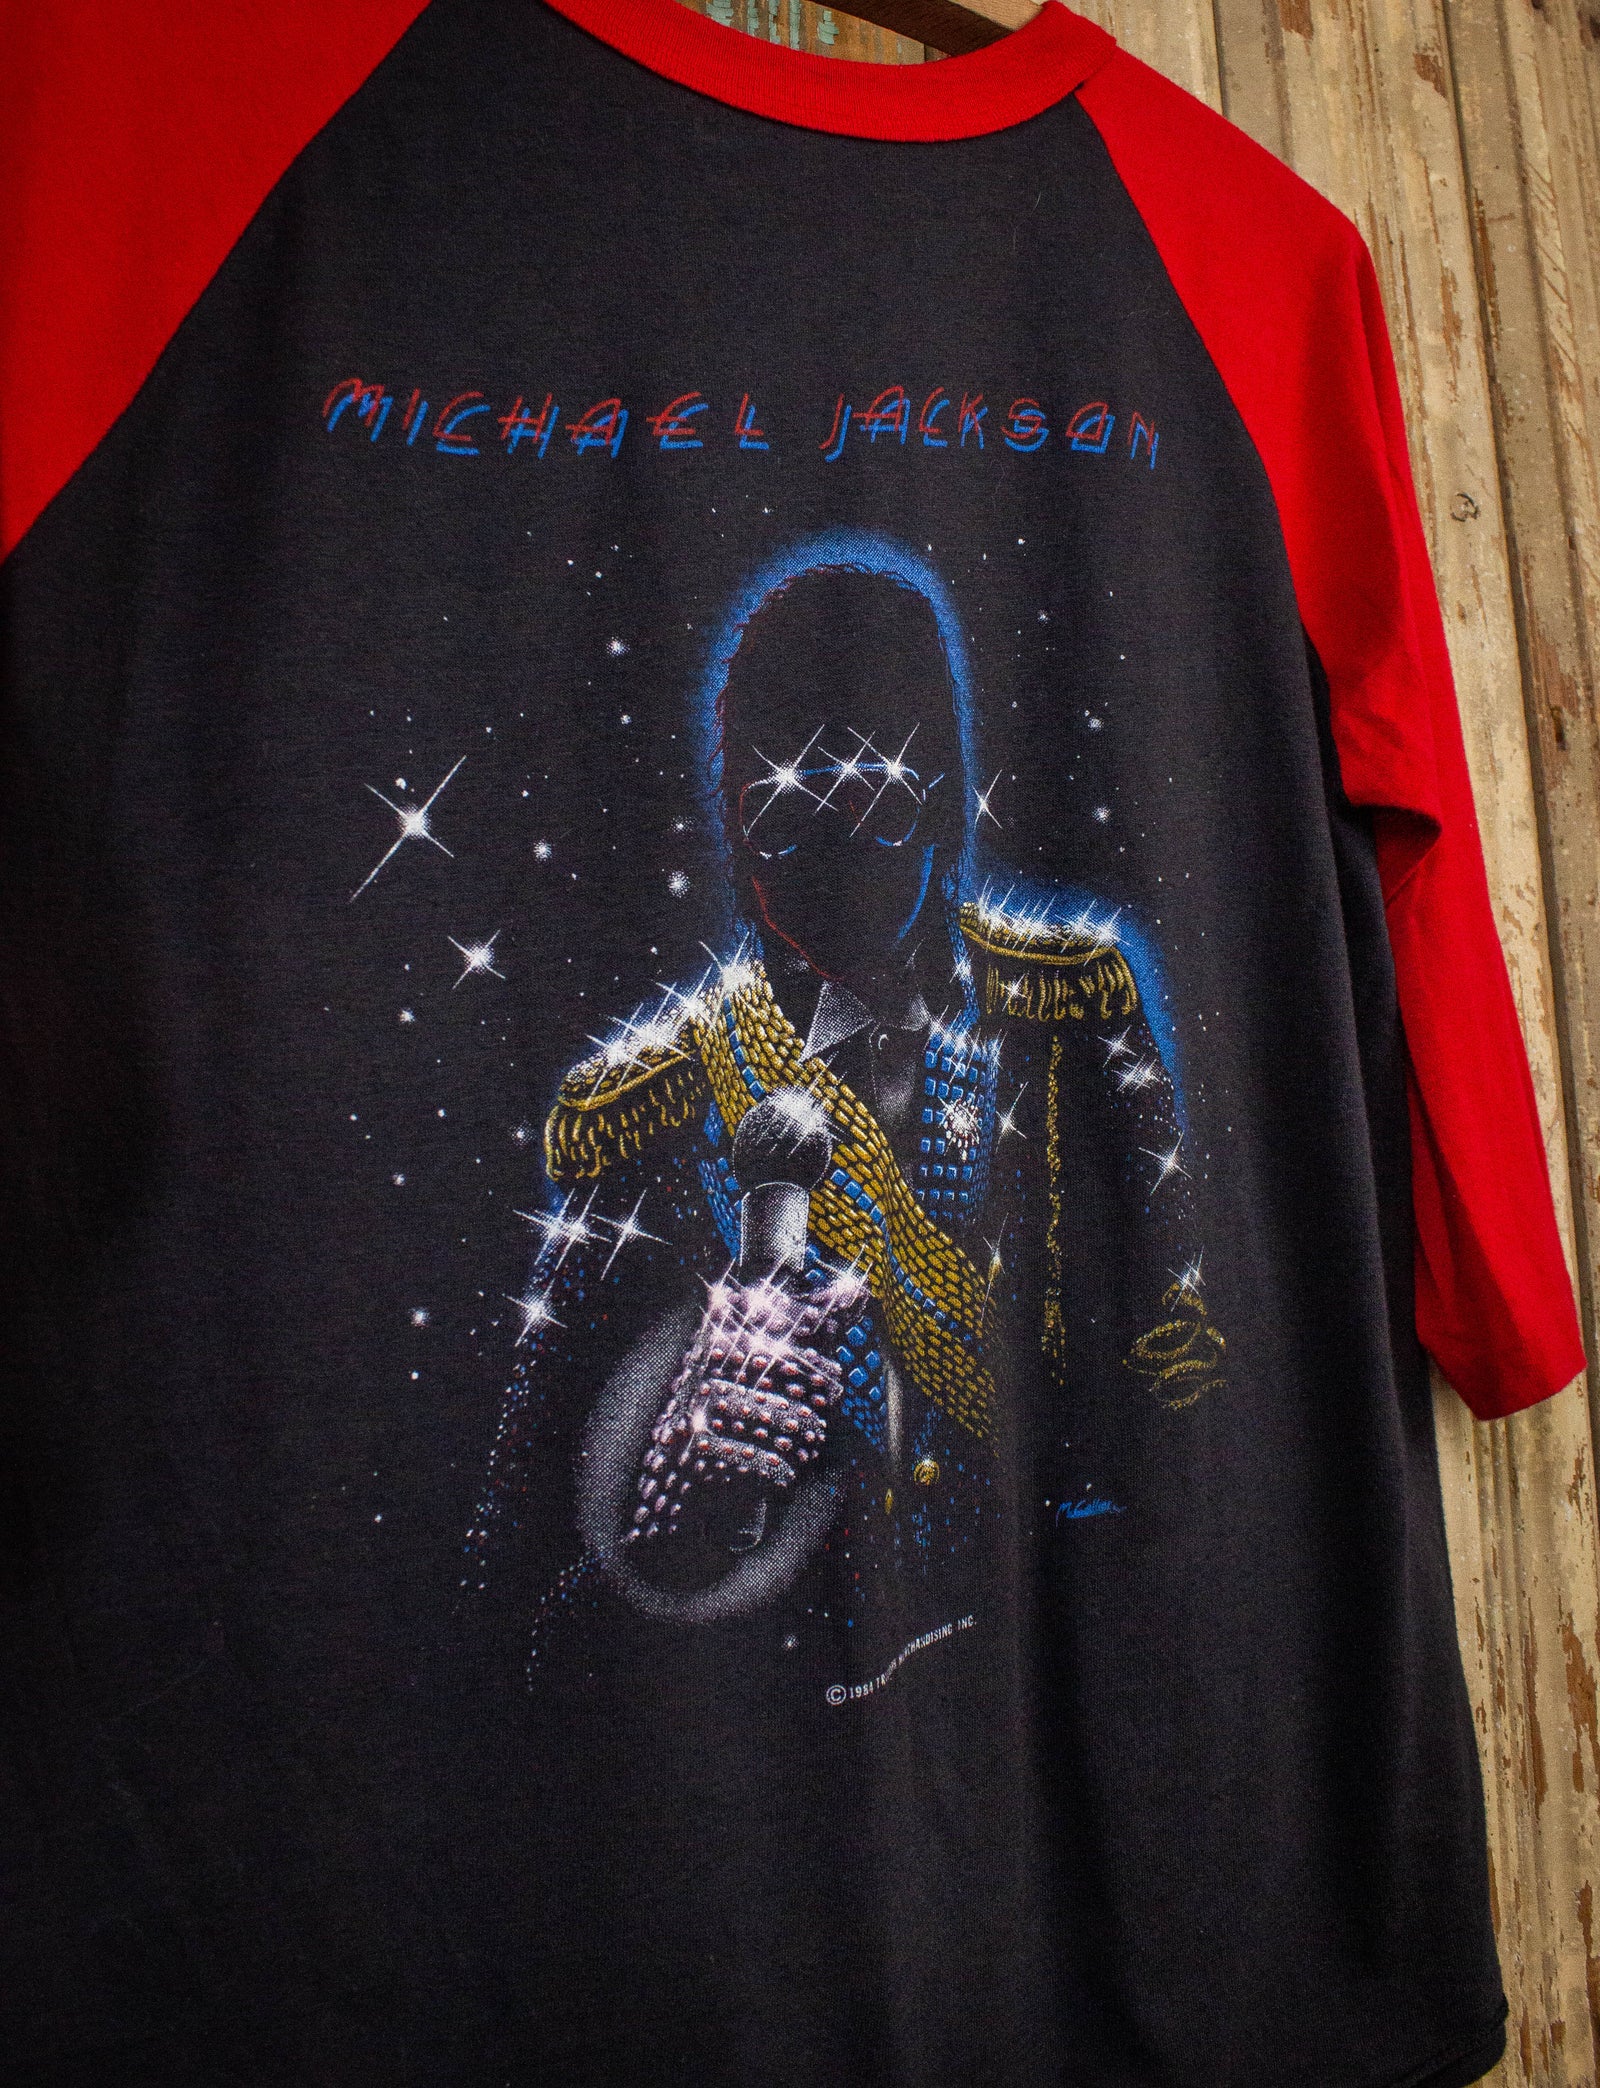 Michael Jackson 'Dangerous' T Shirt Vintage Gift For Men Women